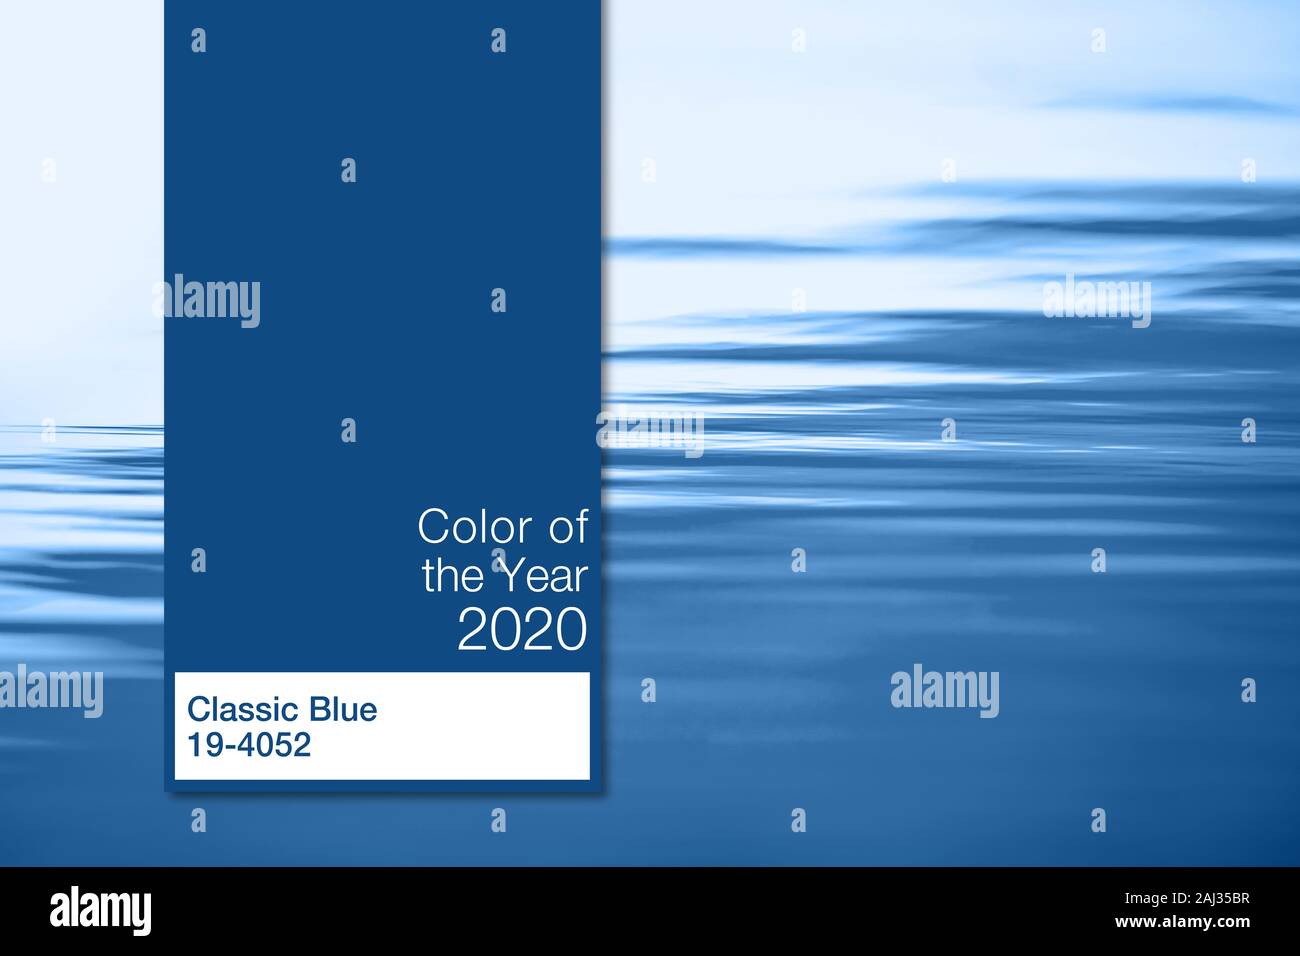 Couleur de l'année 2020, Classic Bleu, palette de couleurs tendance swatch échantillon guide book, modèle isolé sur fond de mer bleu with copy space Banque D'Images